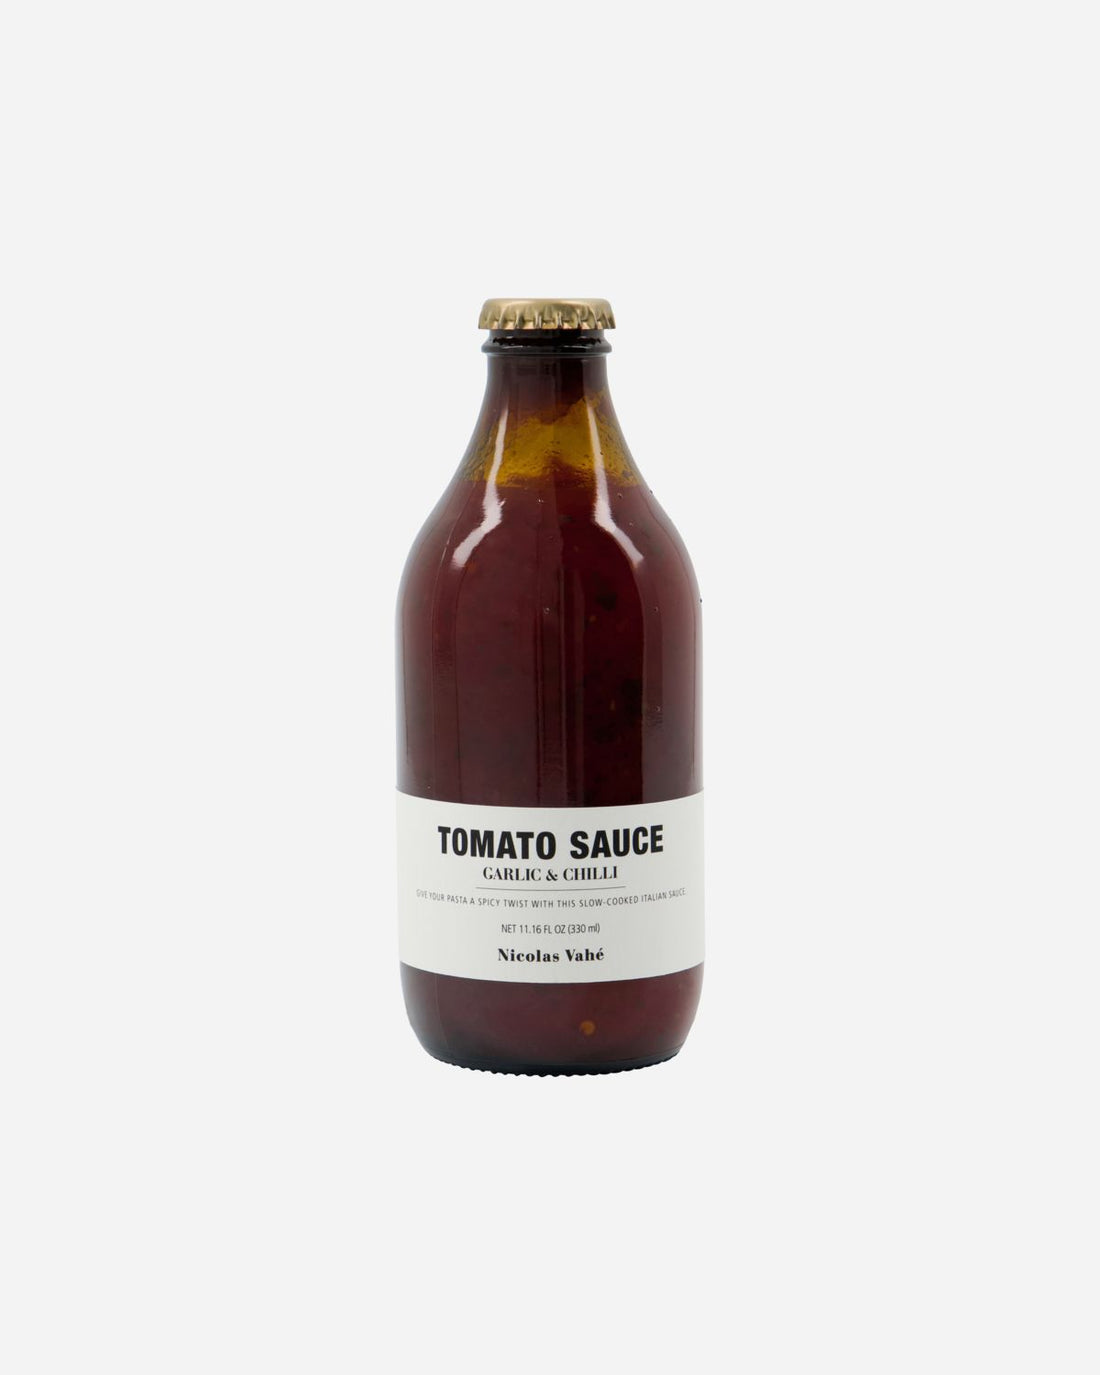 Nicolas vahé - Tomato sauce, garlic &amp; chili